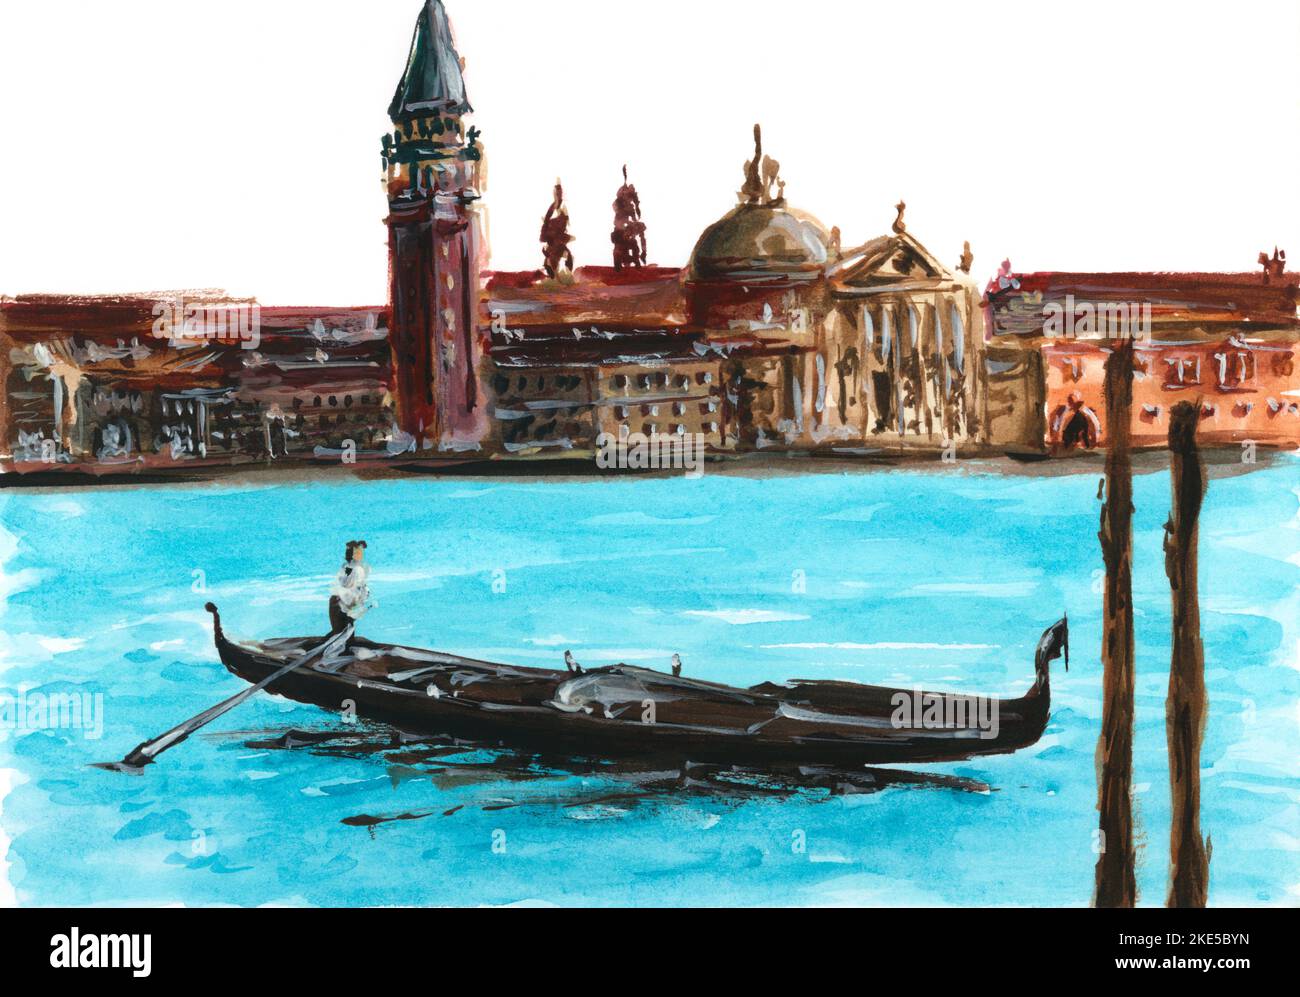 Dessin aquarelle de Venise: Gondolier en gondole avec les touristes qui  naviguent dans un canal étroit entre les vieux bâtiments colorés et le pont  en pierre Photo Stock - Alamy